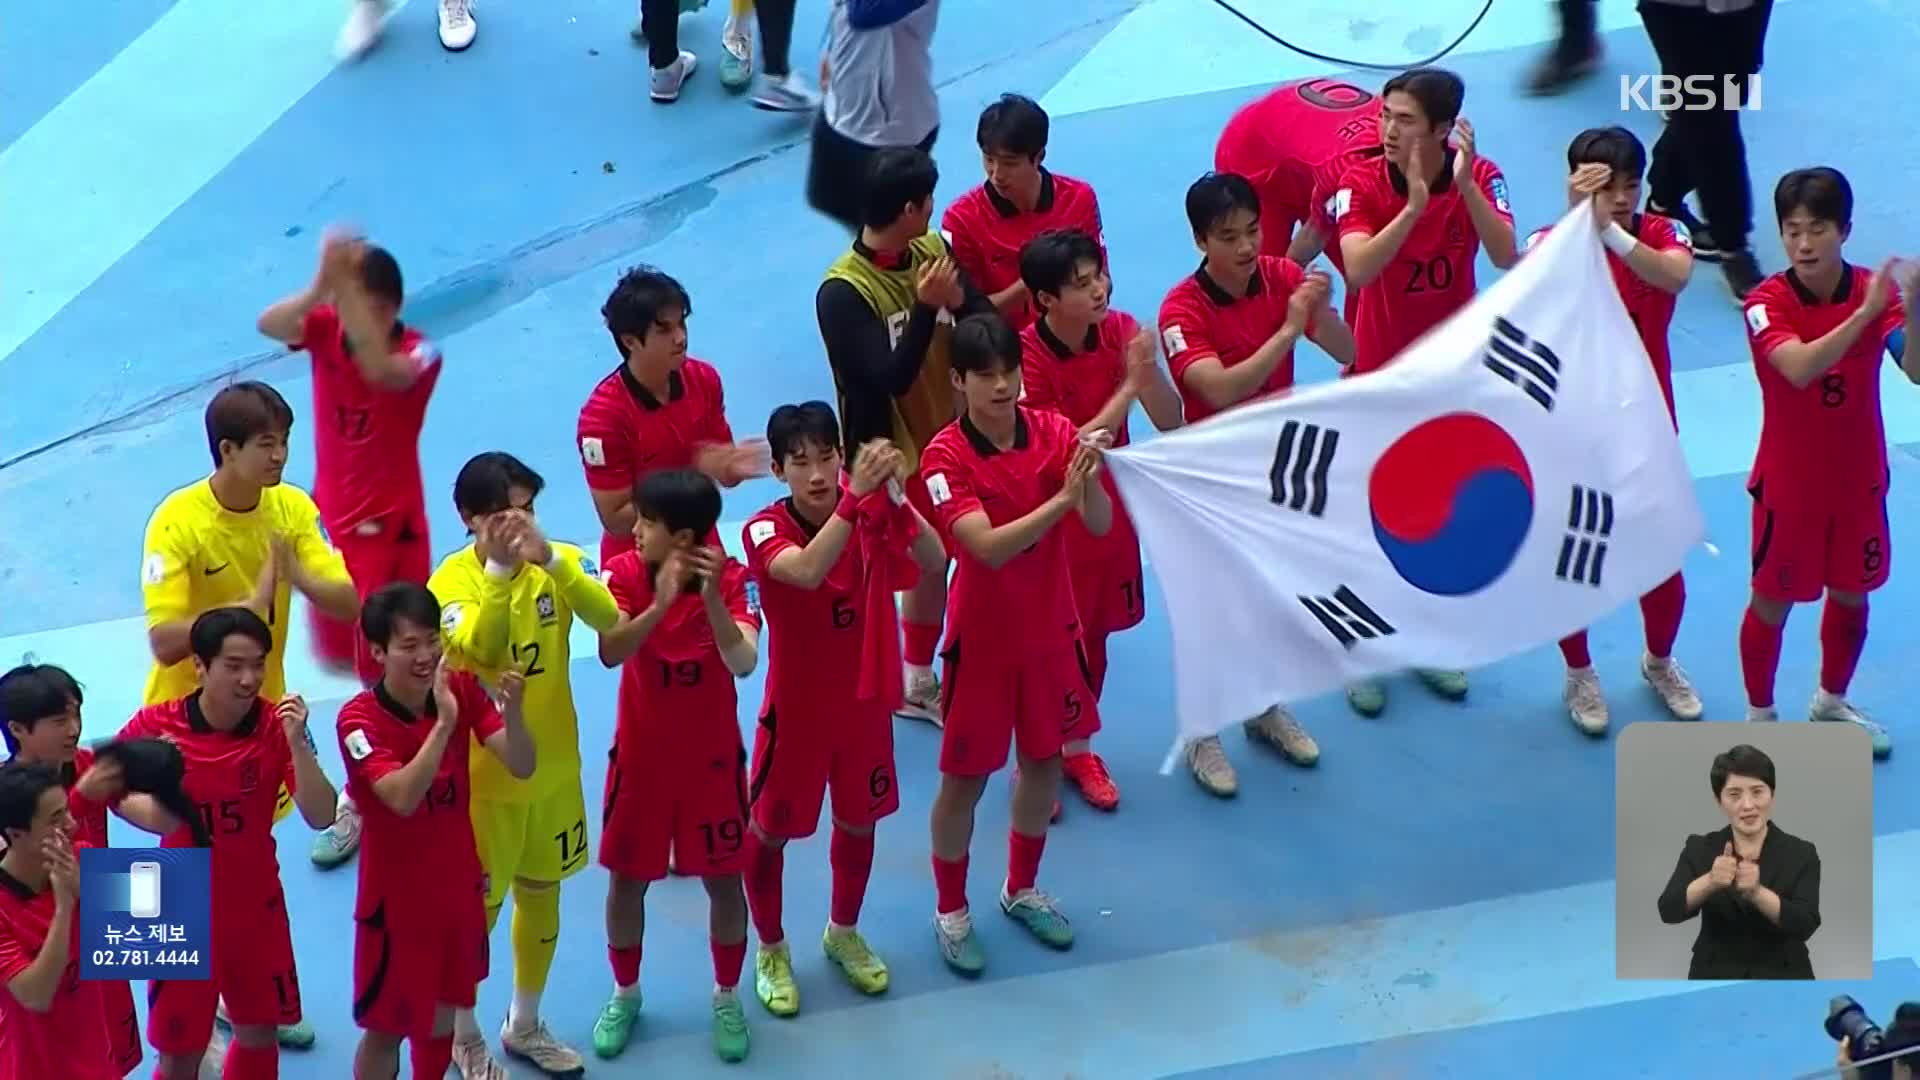 U-20 대표팀, 2회 연속 4강 진출 쾌거…최석현, 환상 결승골